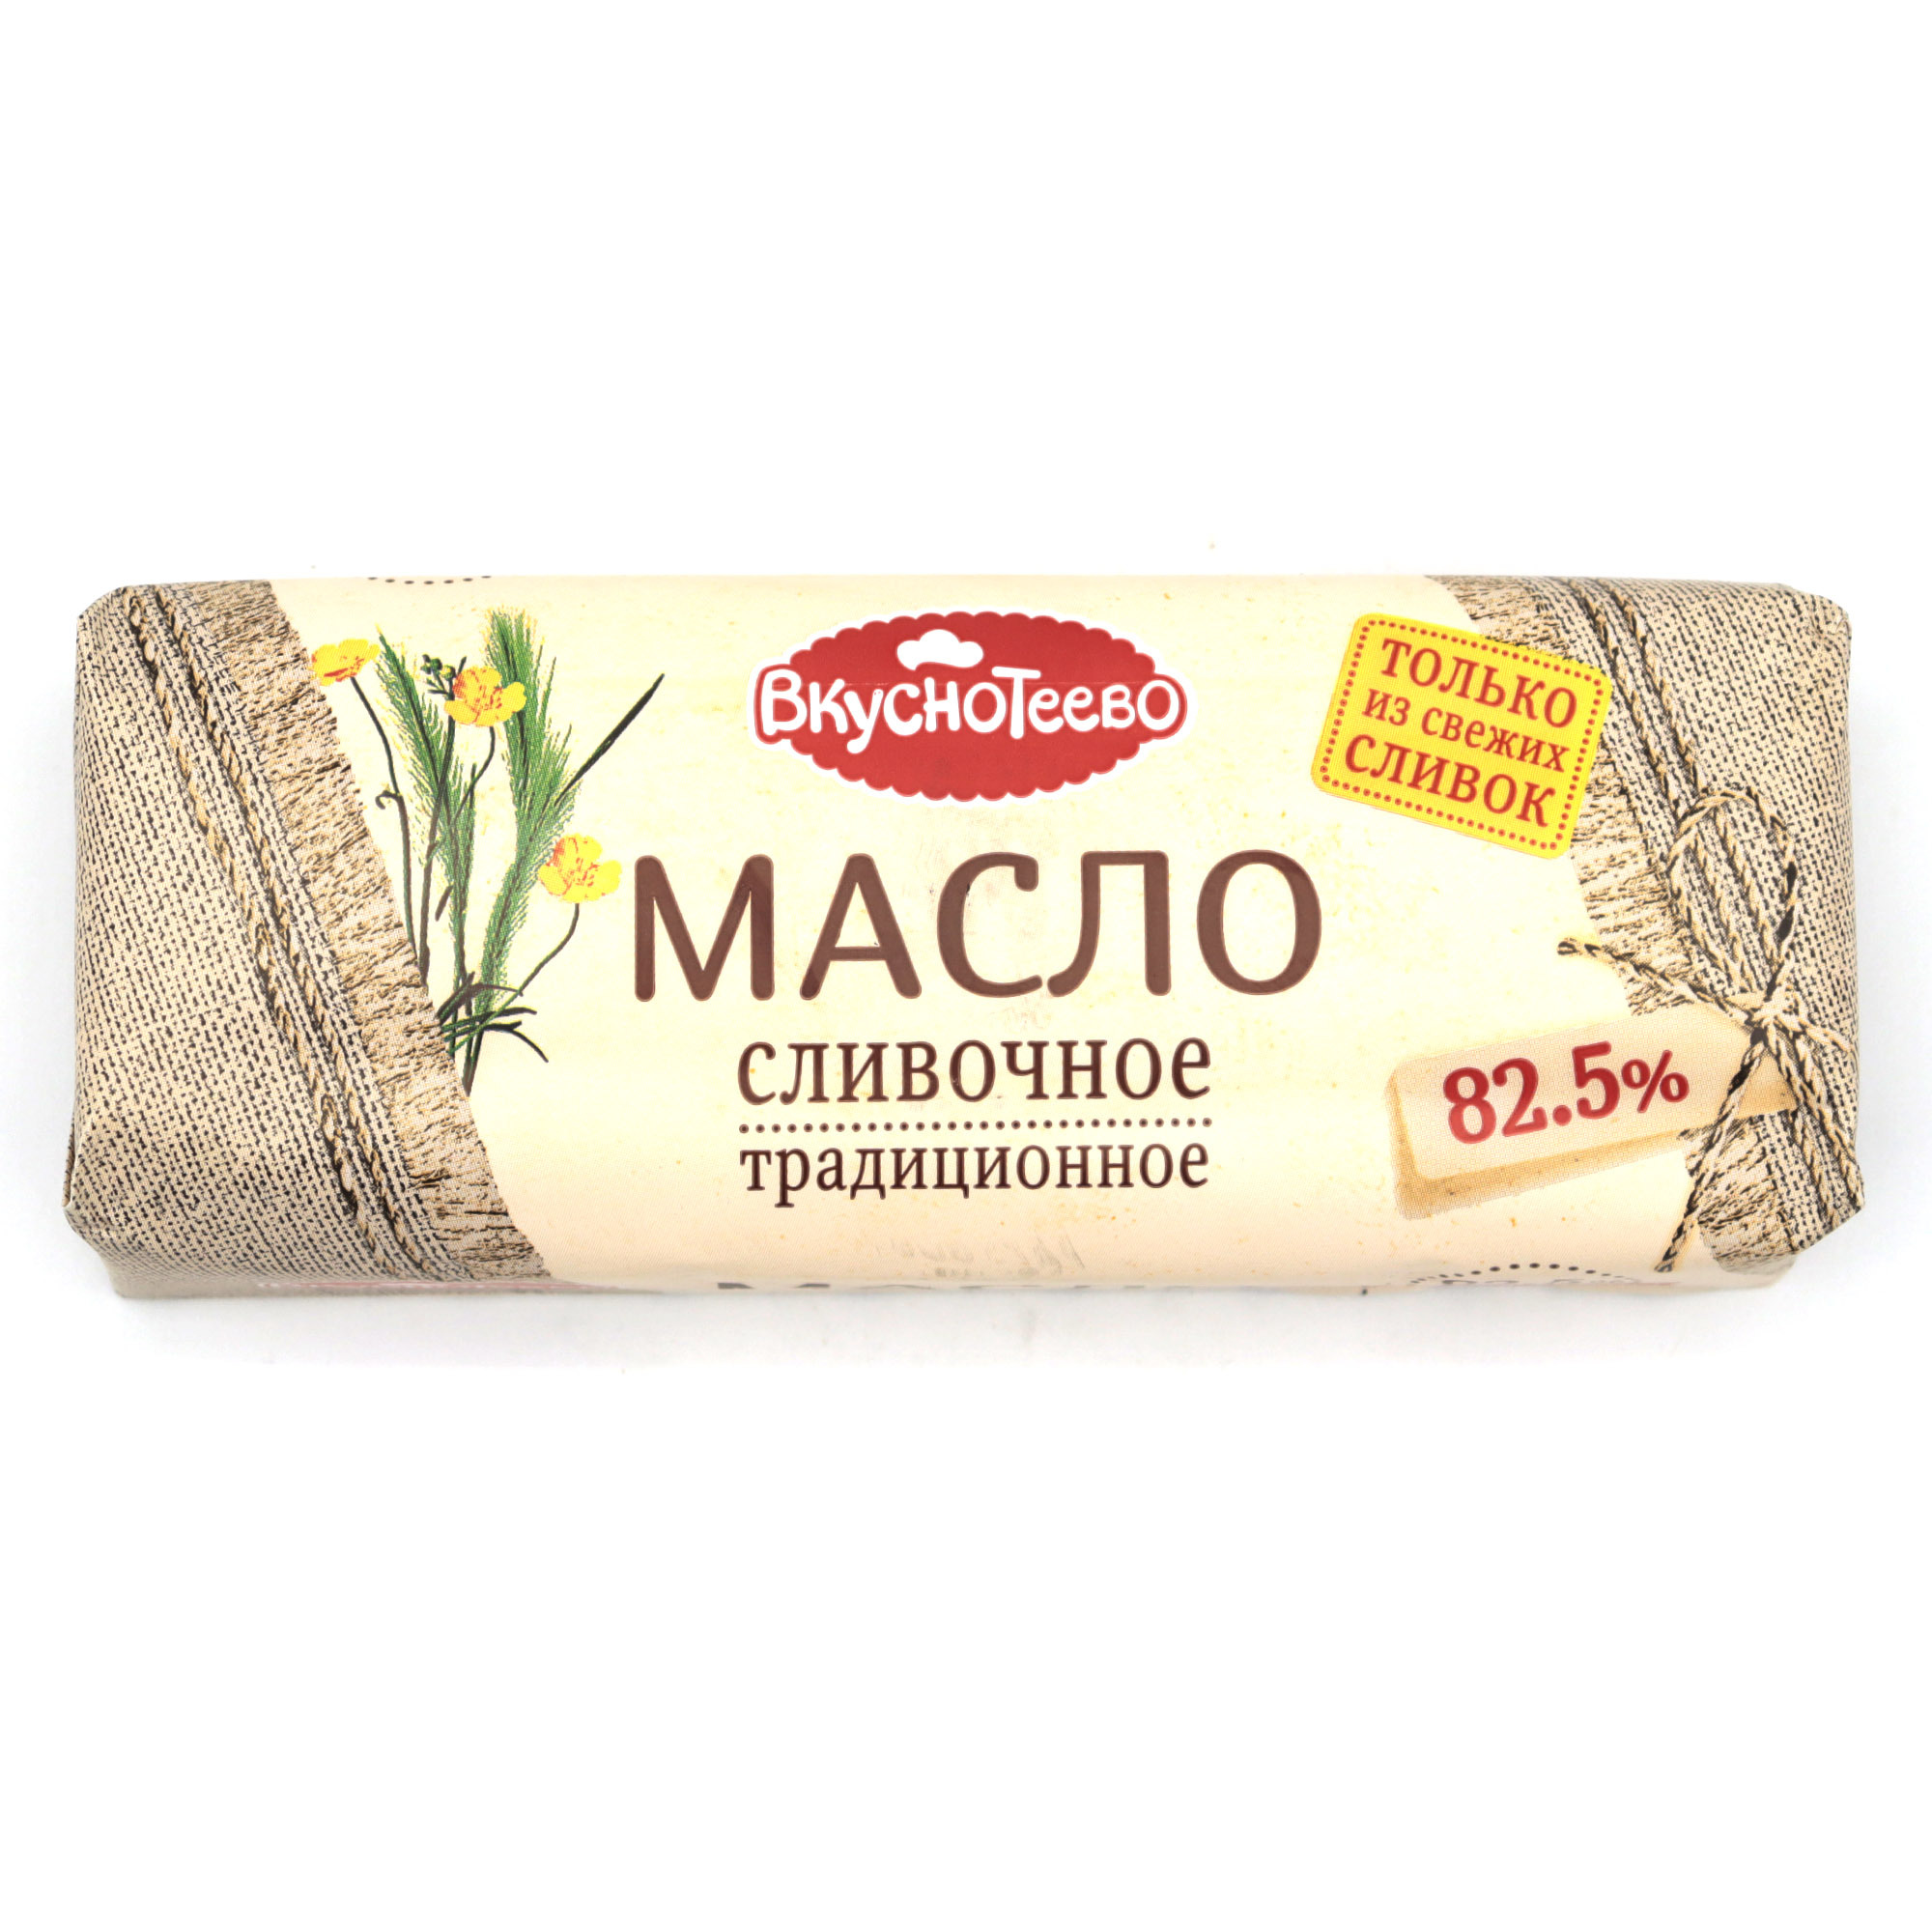 Масло Вкуснотеево 82.5 400 гр